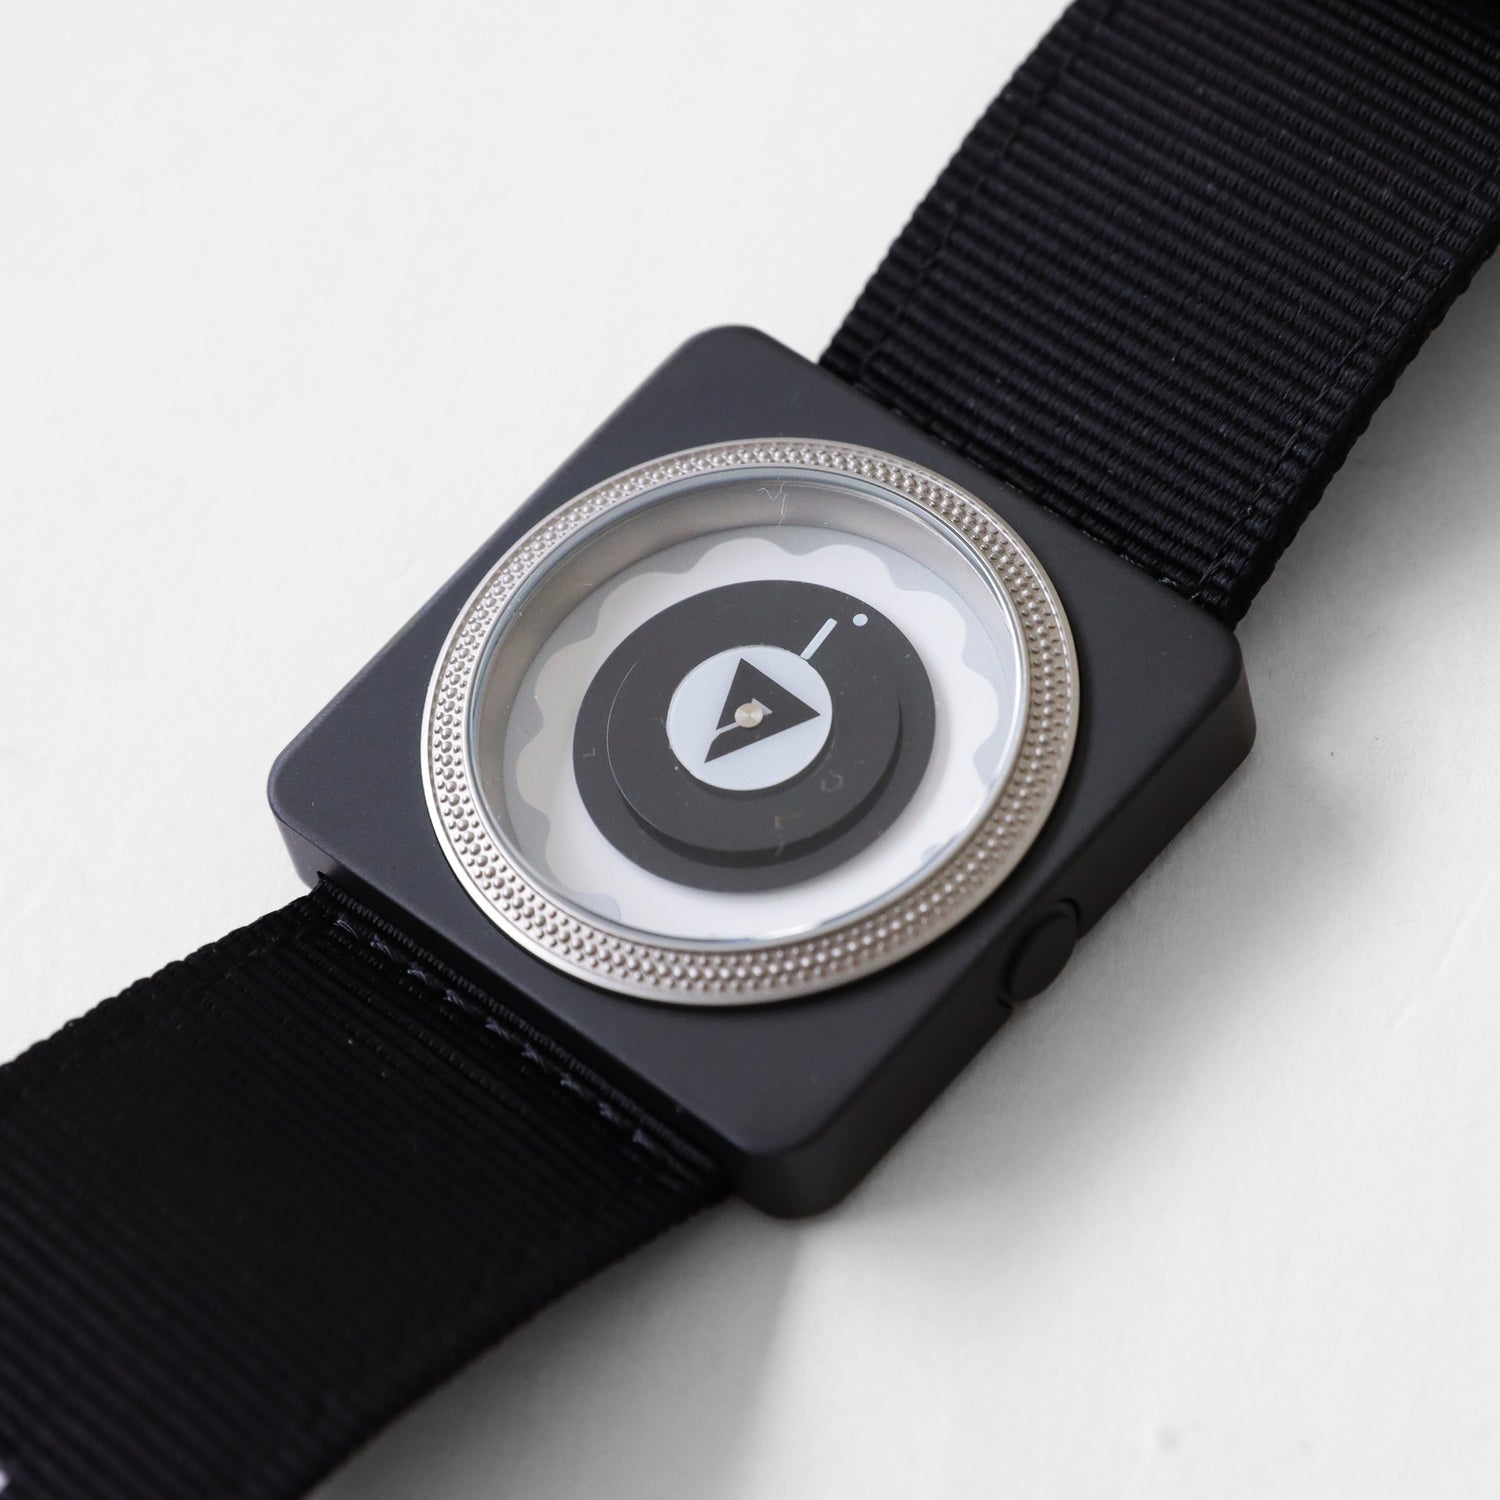 ターンテーブル型腕時計 TYMETABLE – HATCH